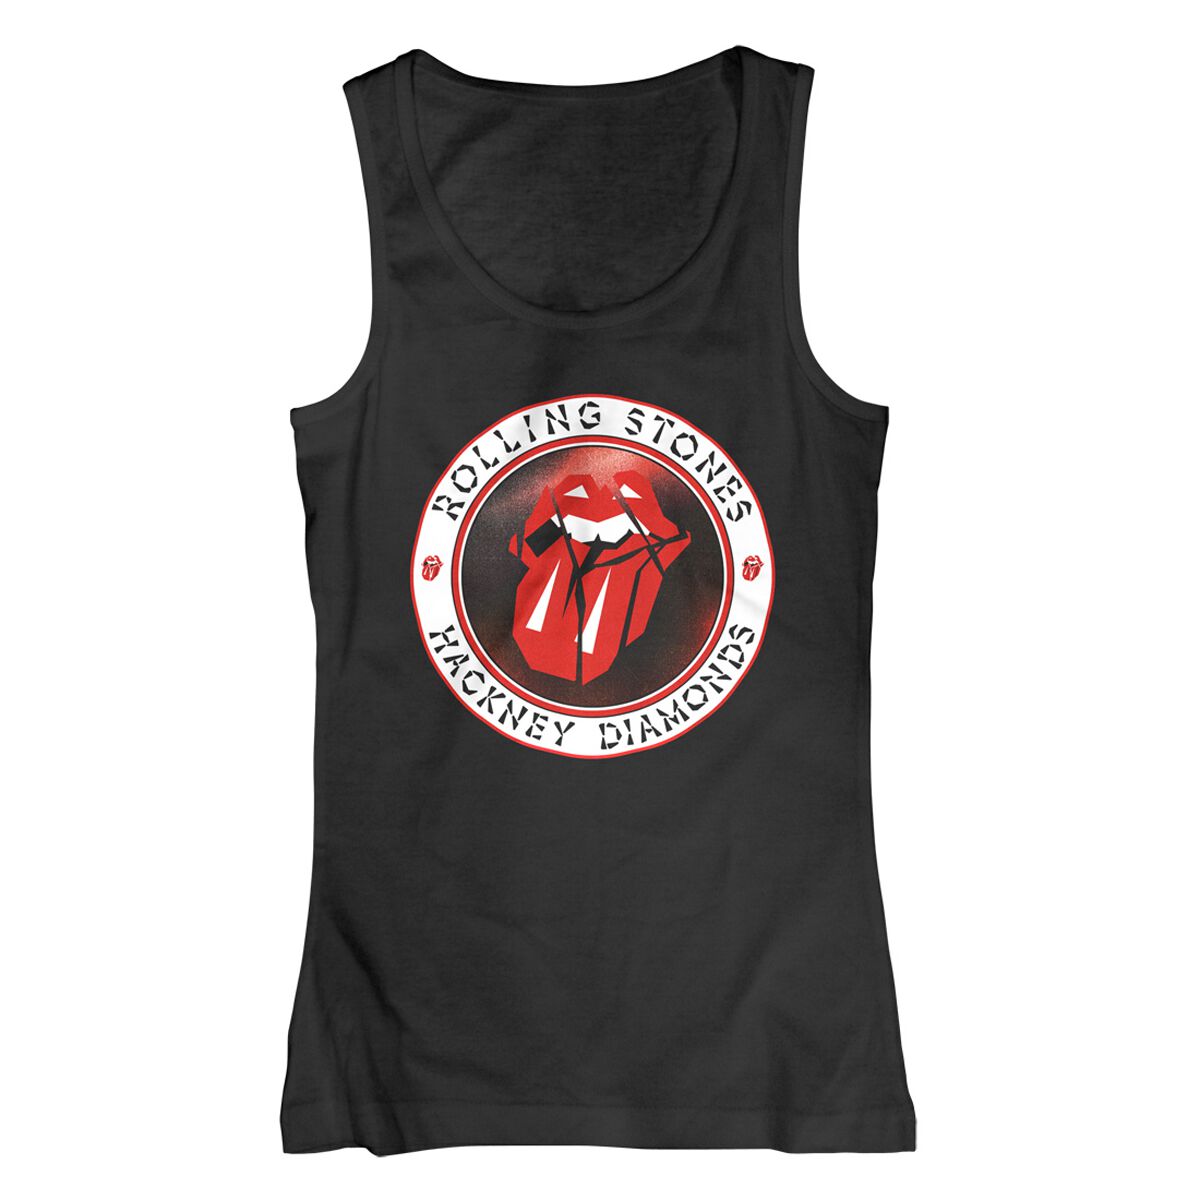 The Rolling Stones Top - Hackney Diamonds Circle Label - S bis XXL - für Damen - Größe XXL - schwarz  - Lizenziertes Merchandise!